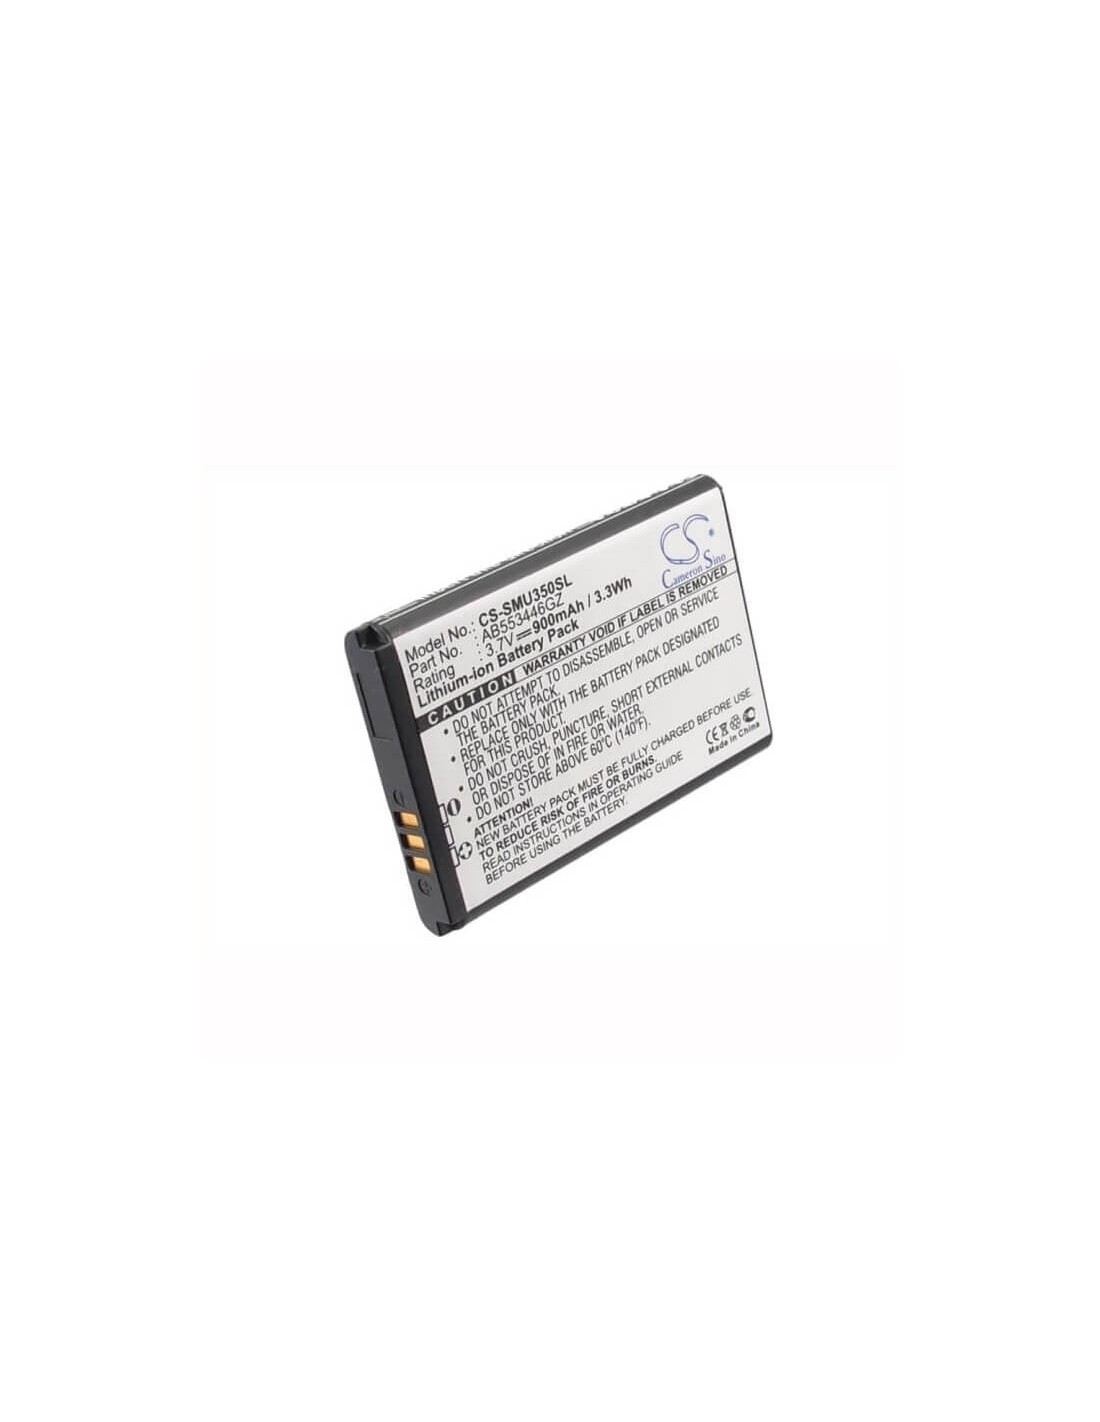 Battery for Samsung SCH-U310, Knack U310, SCH-U410 3.7V, 900mAh - 3.33Wh